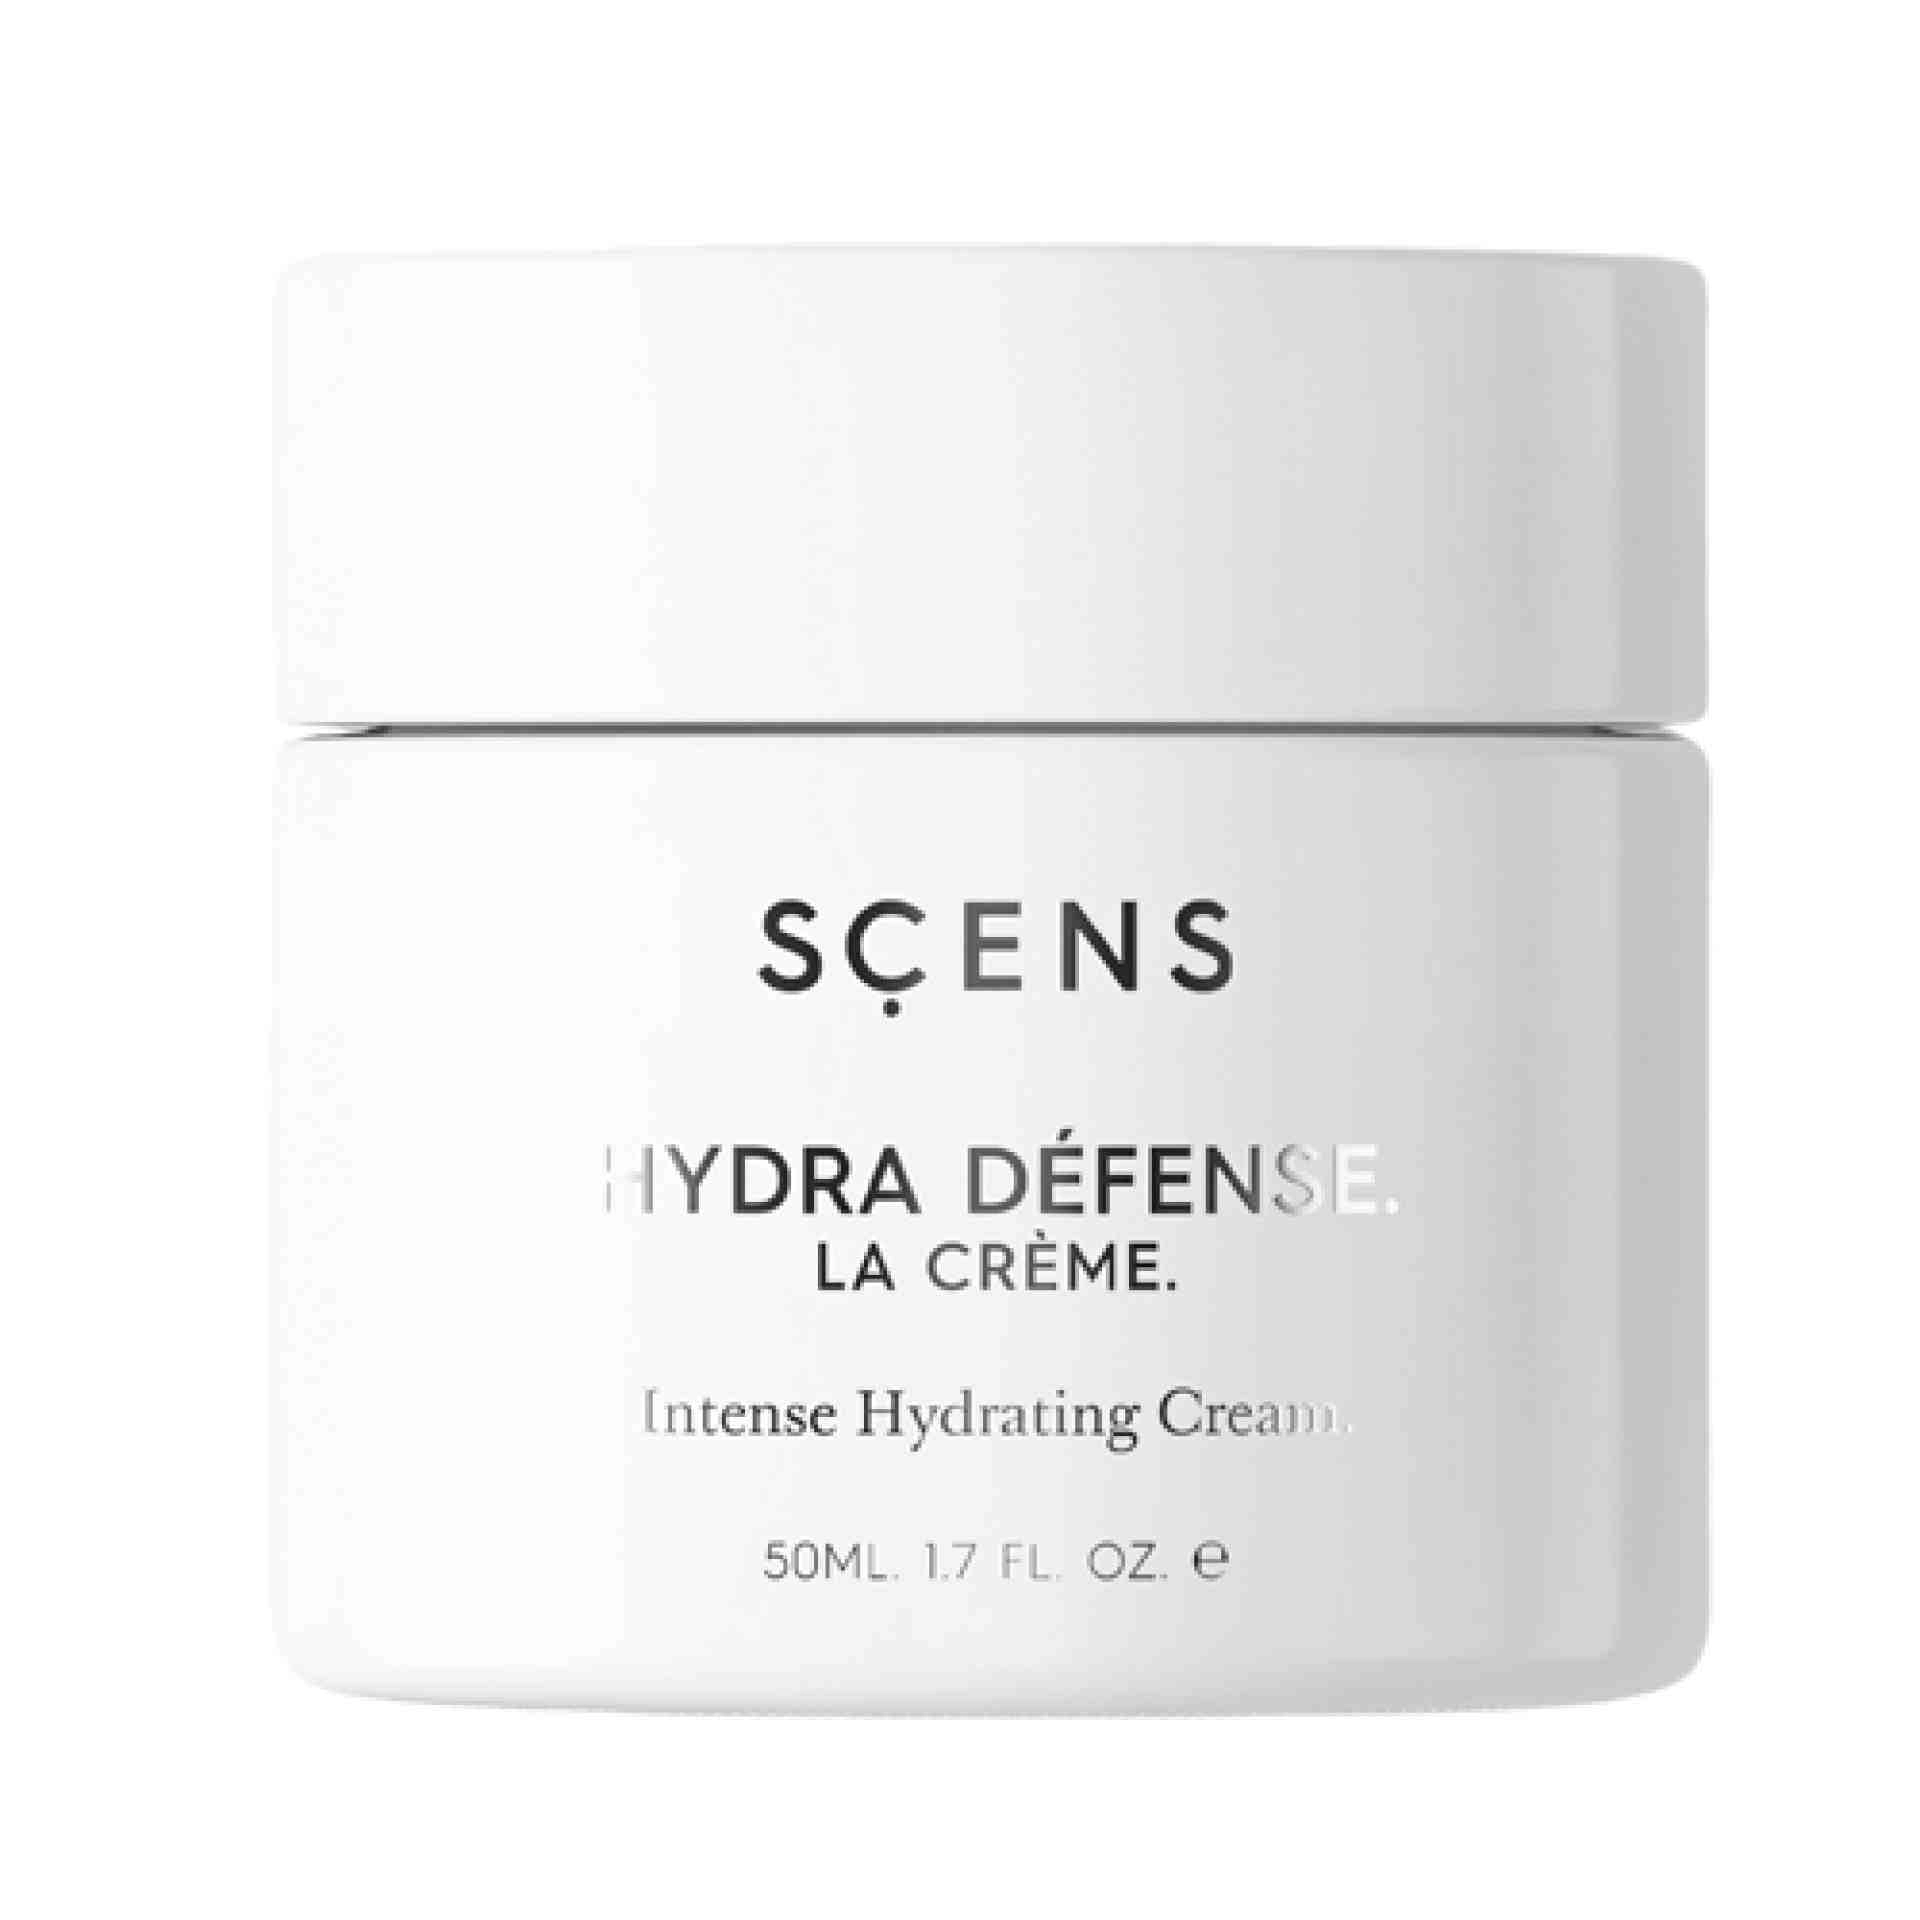 La Crème | Crema Hidratante Intensa 50ml - Hydra Défense - Scens ®